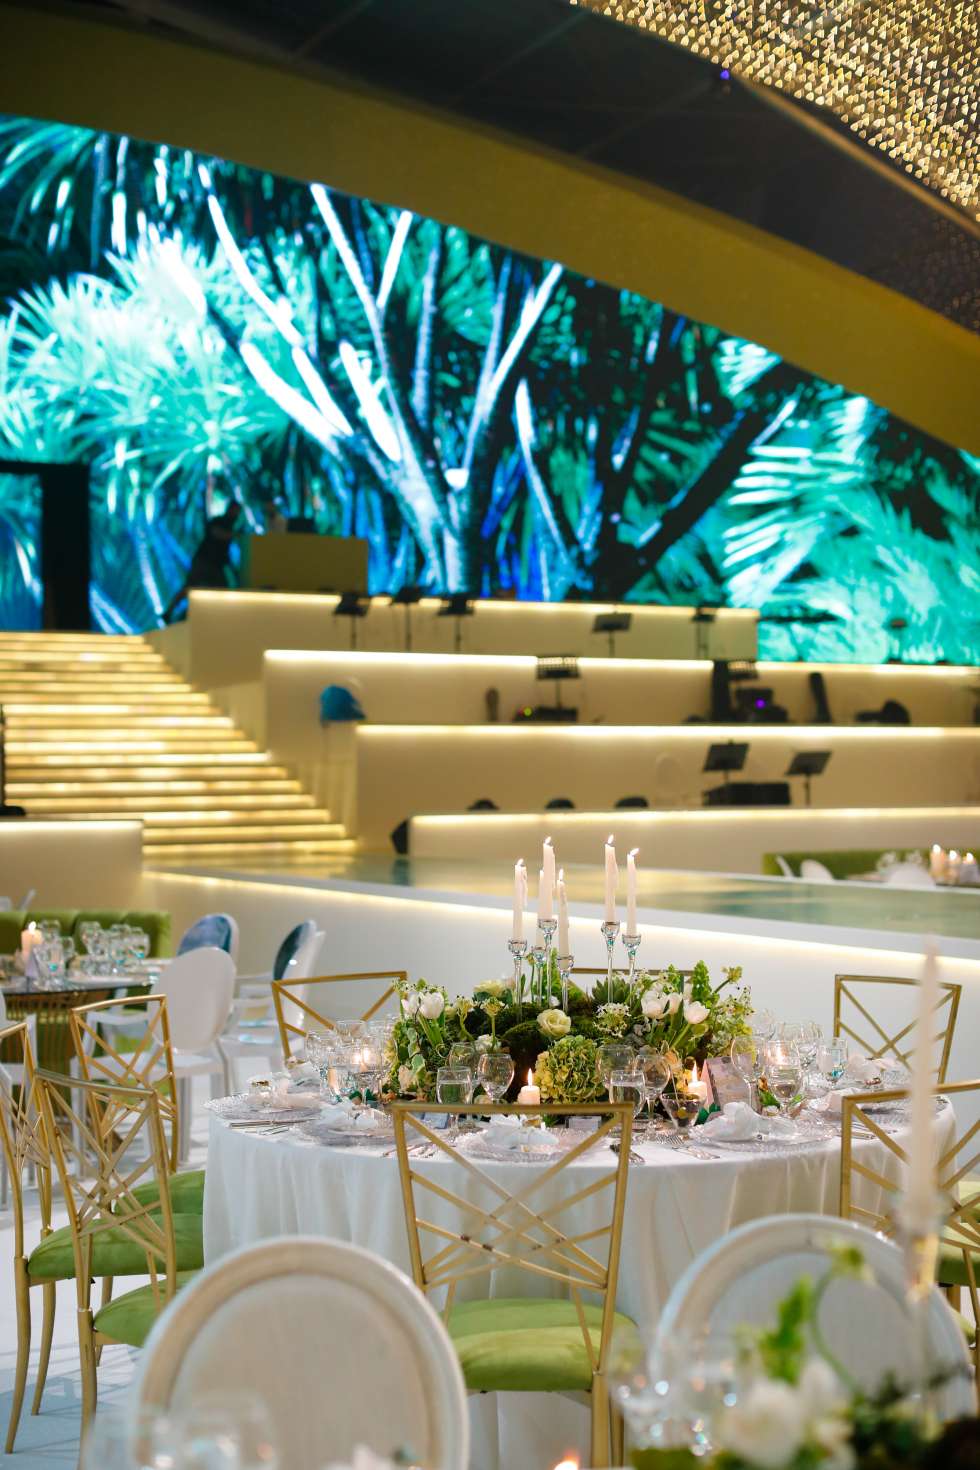 حفل زفاف بوحي قصر الكريستال من تصميم جلوري بوكس في الأردن